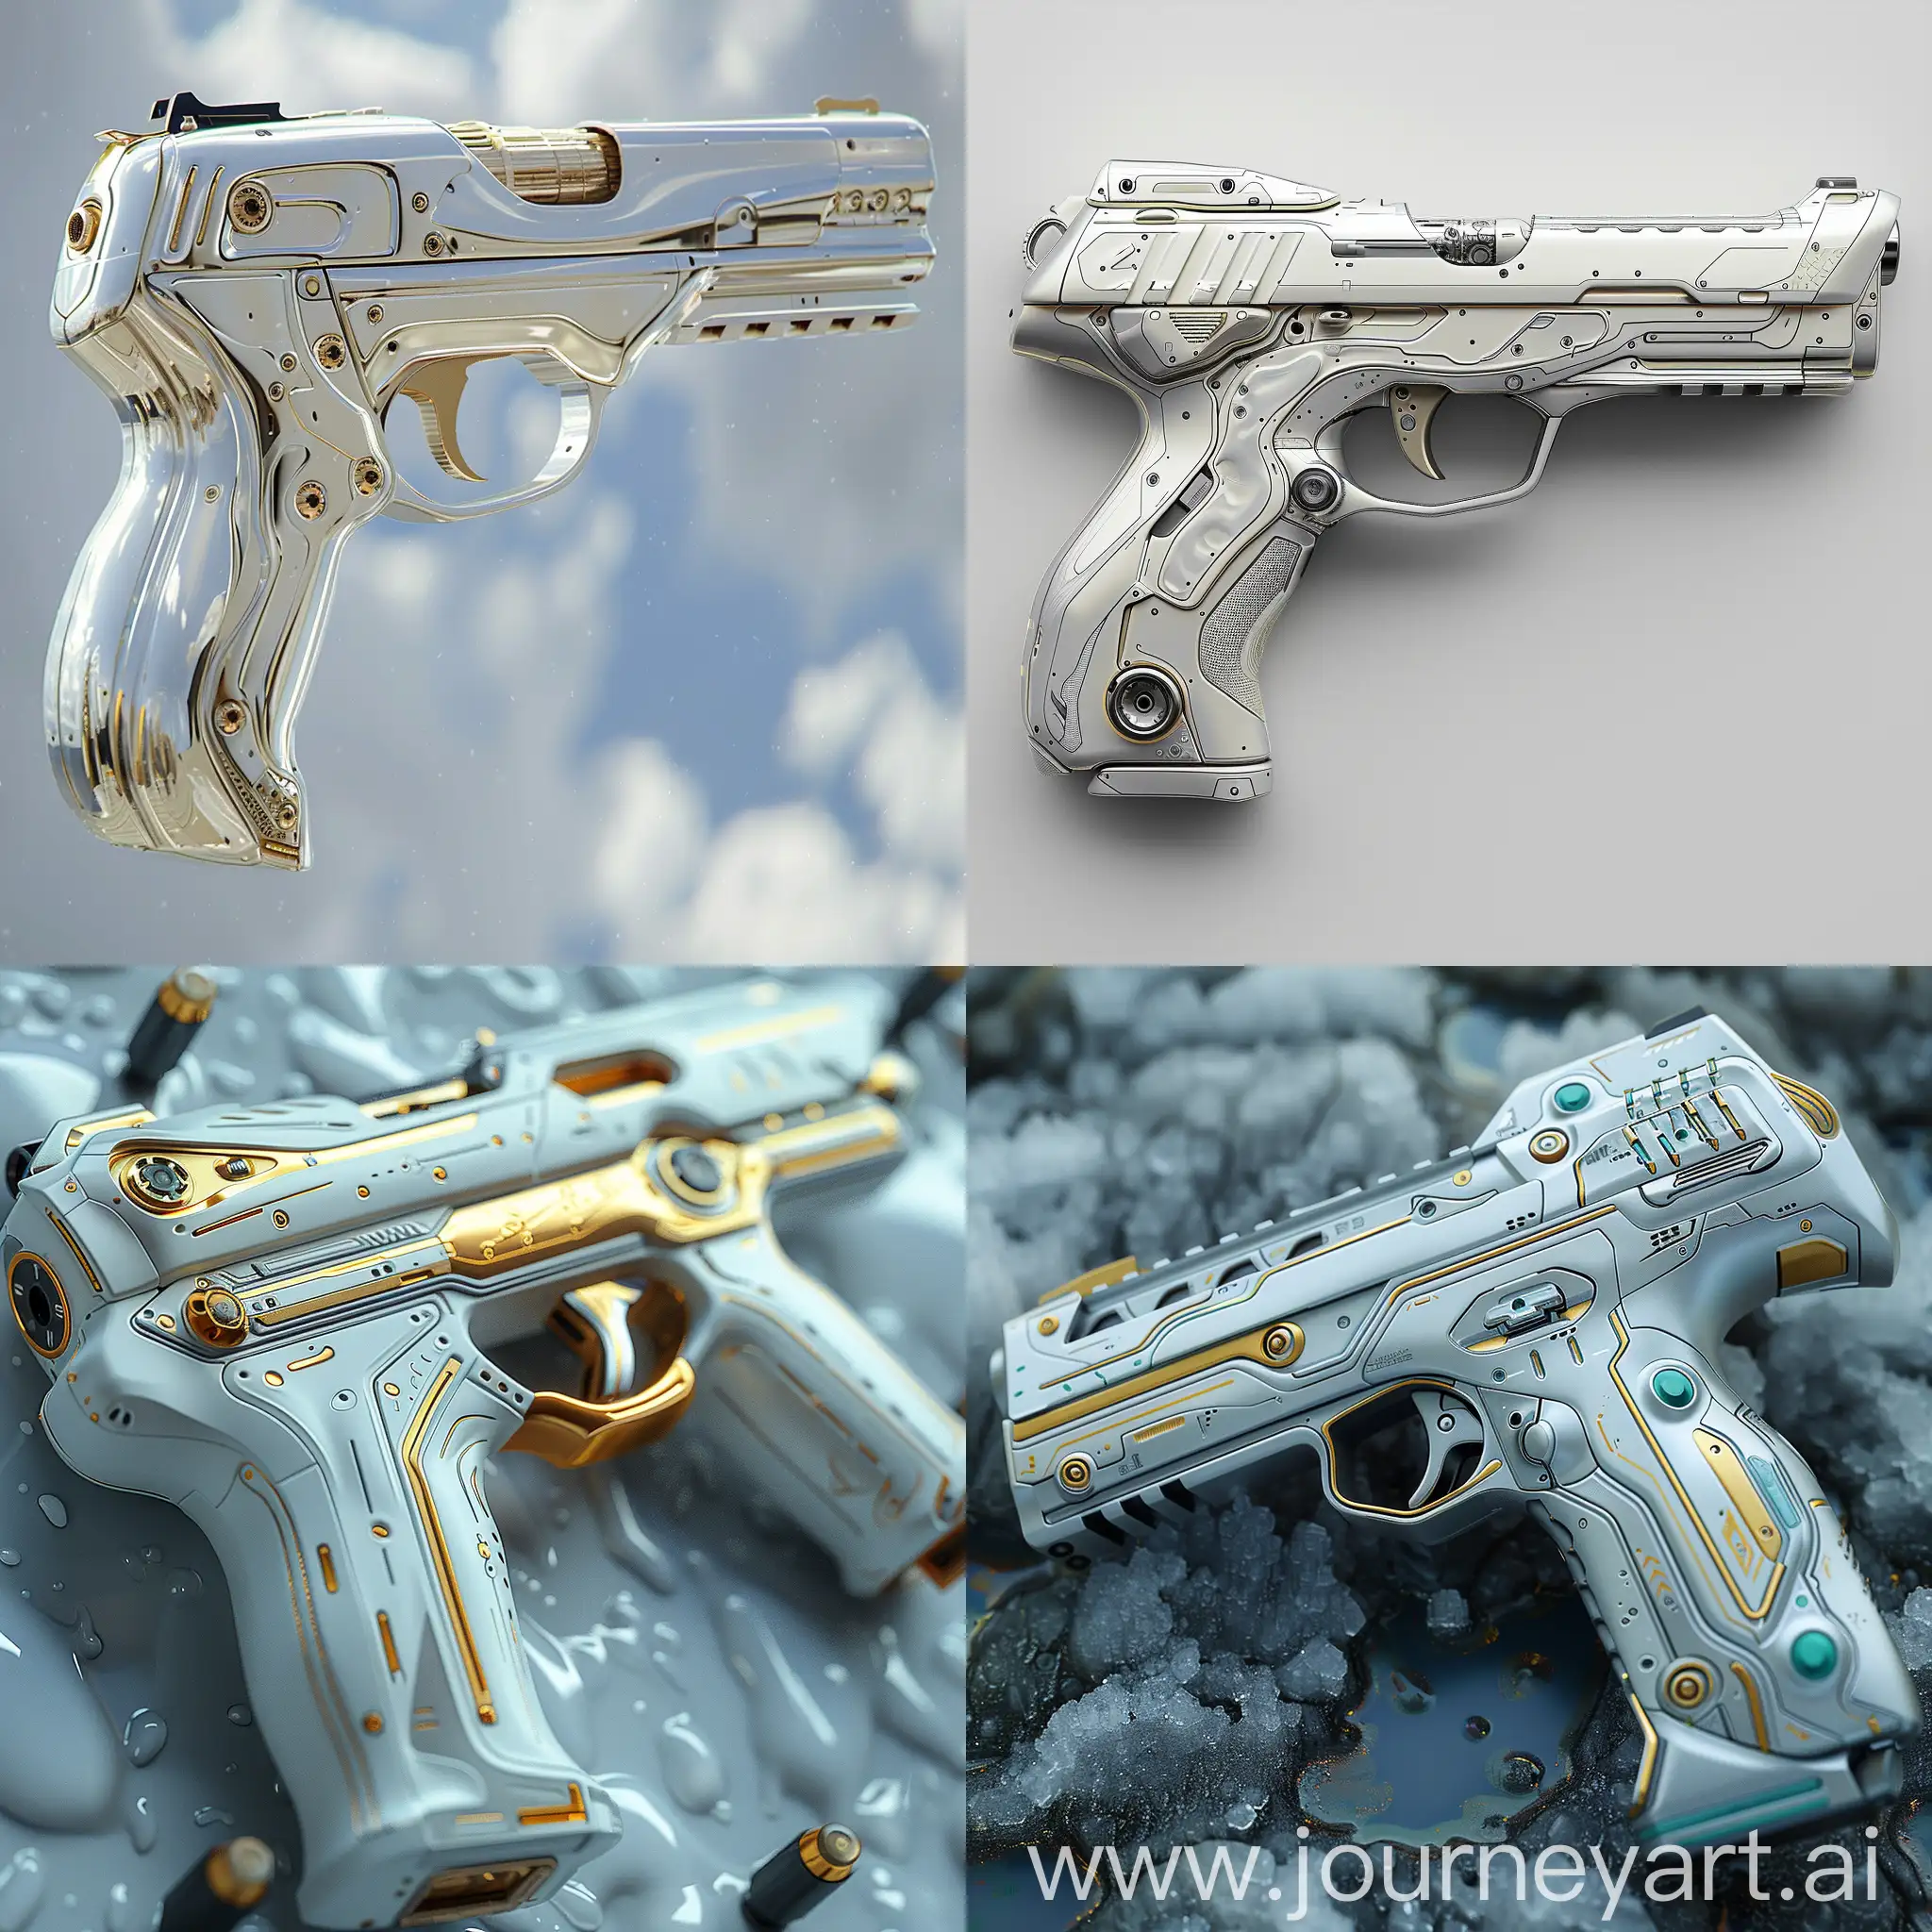 Futuristic pistol, ultra-modern, ultramodern, stainless steel, smart materials, high tech, electronics, octane render --stylize 1000